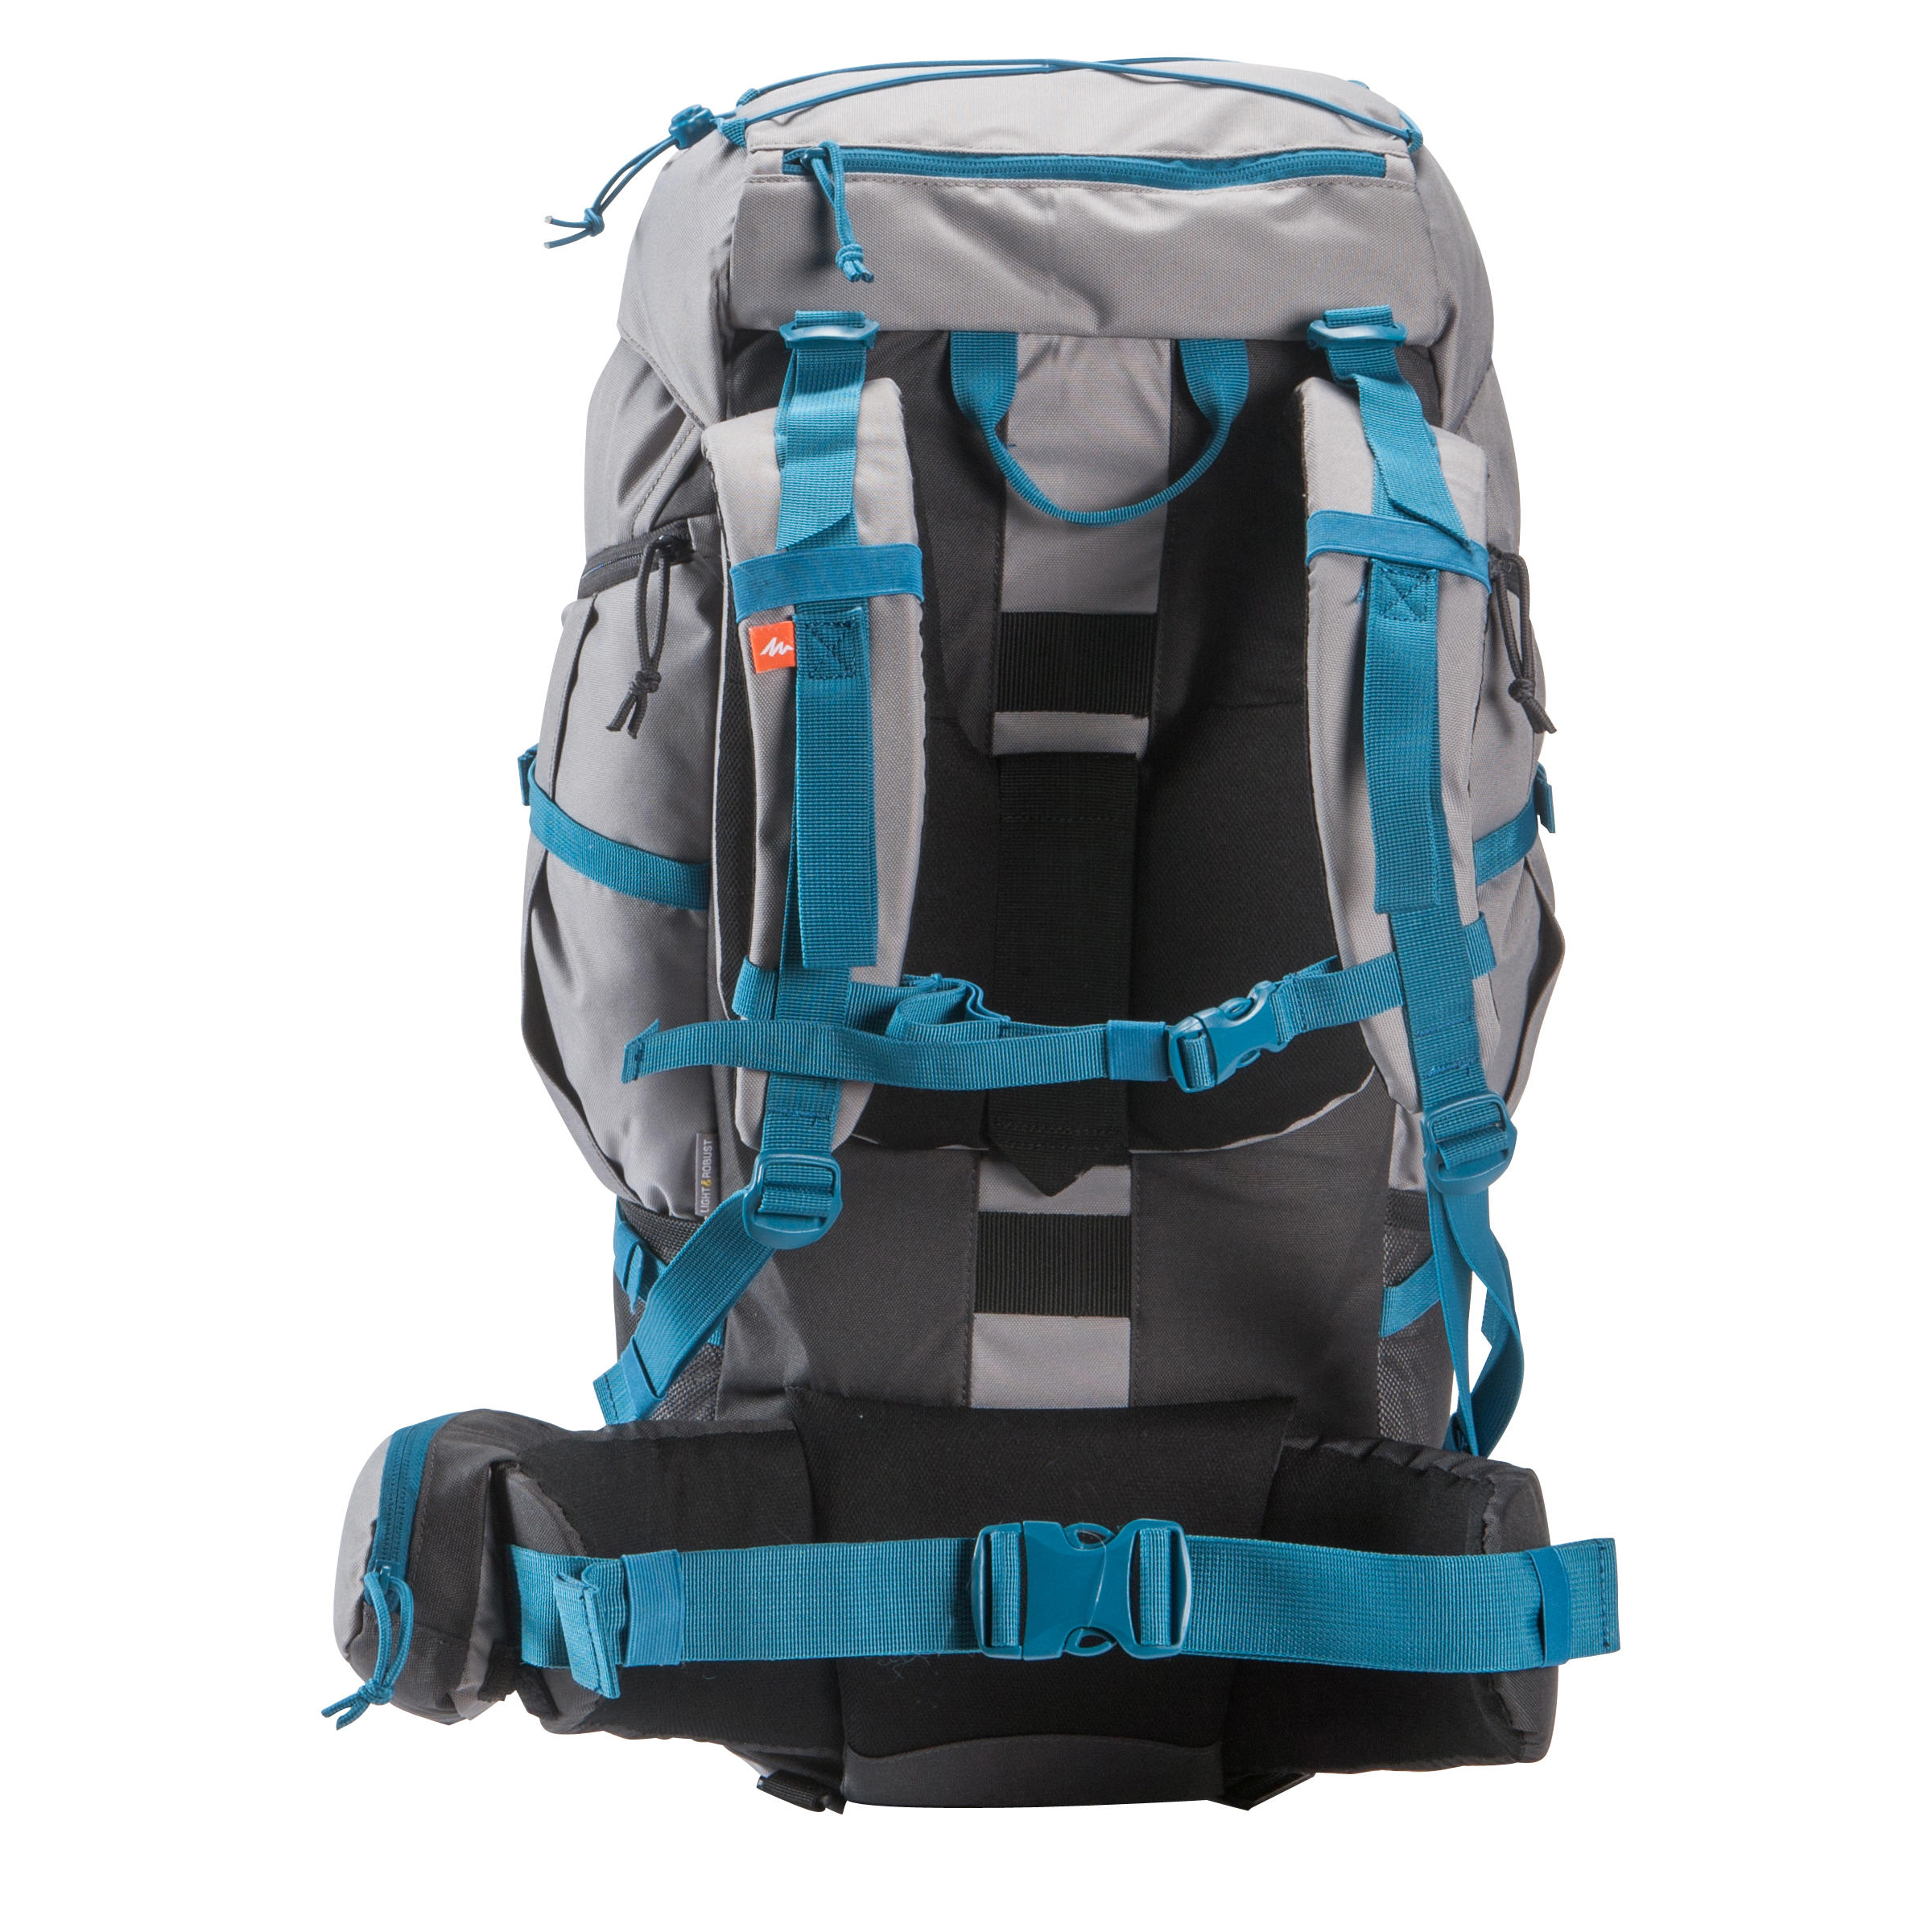 Forclaz 50 Litre Hiking Backpack|Travel 